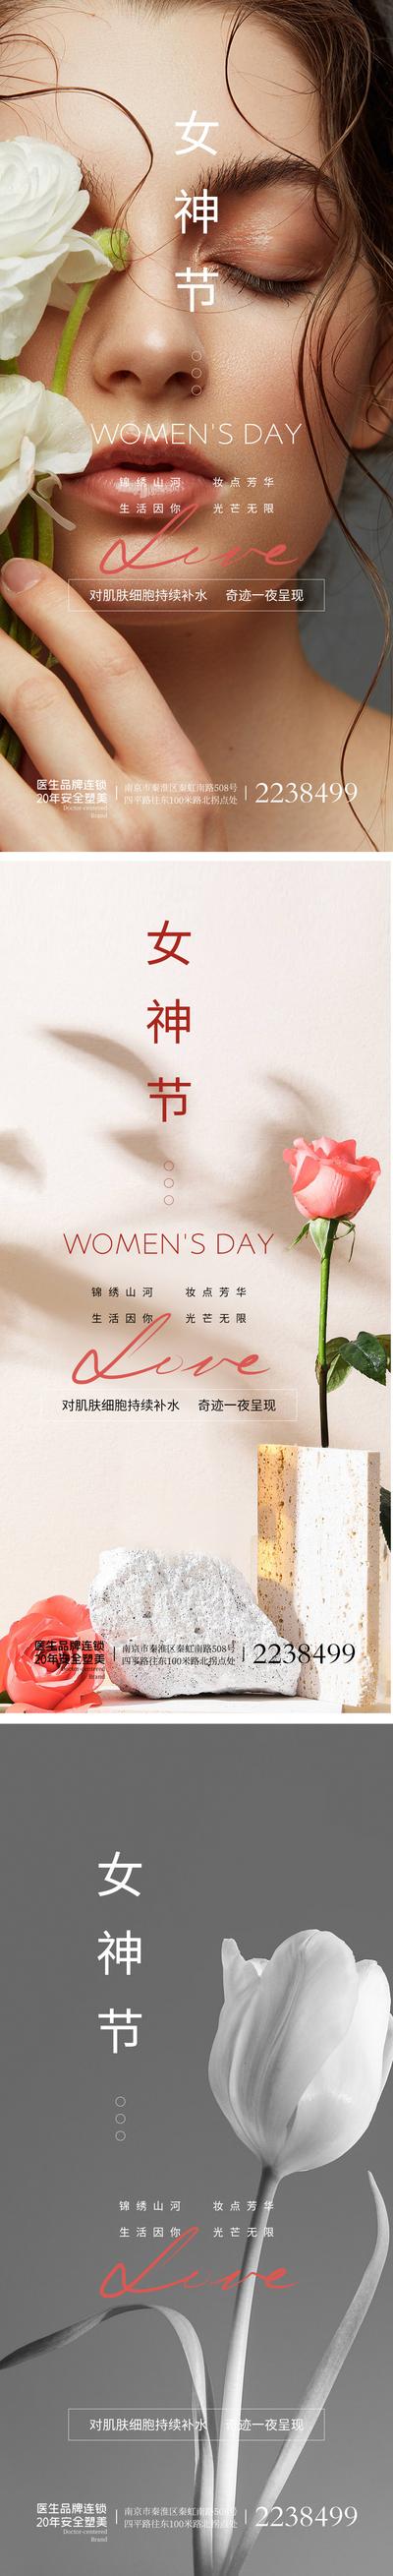 南门网 广告 海报 节日 妇女节 38 鲜花 清新